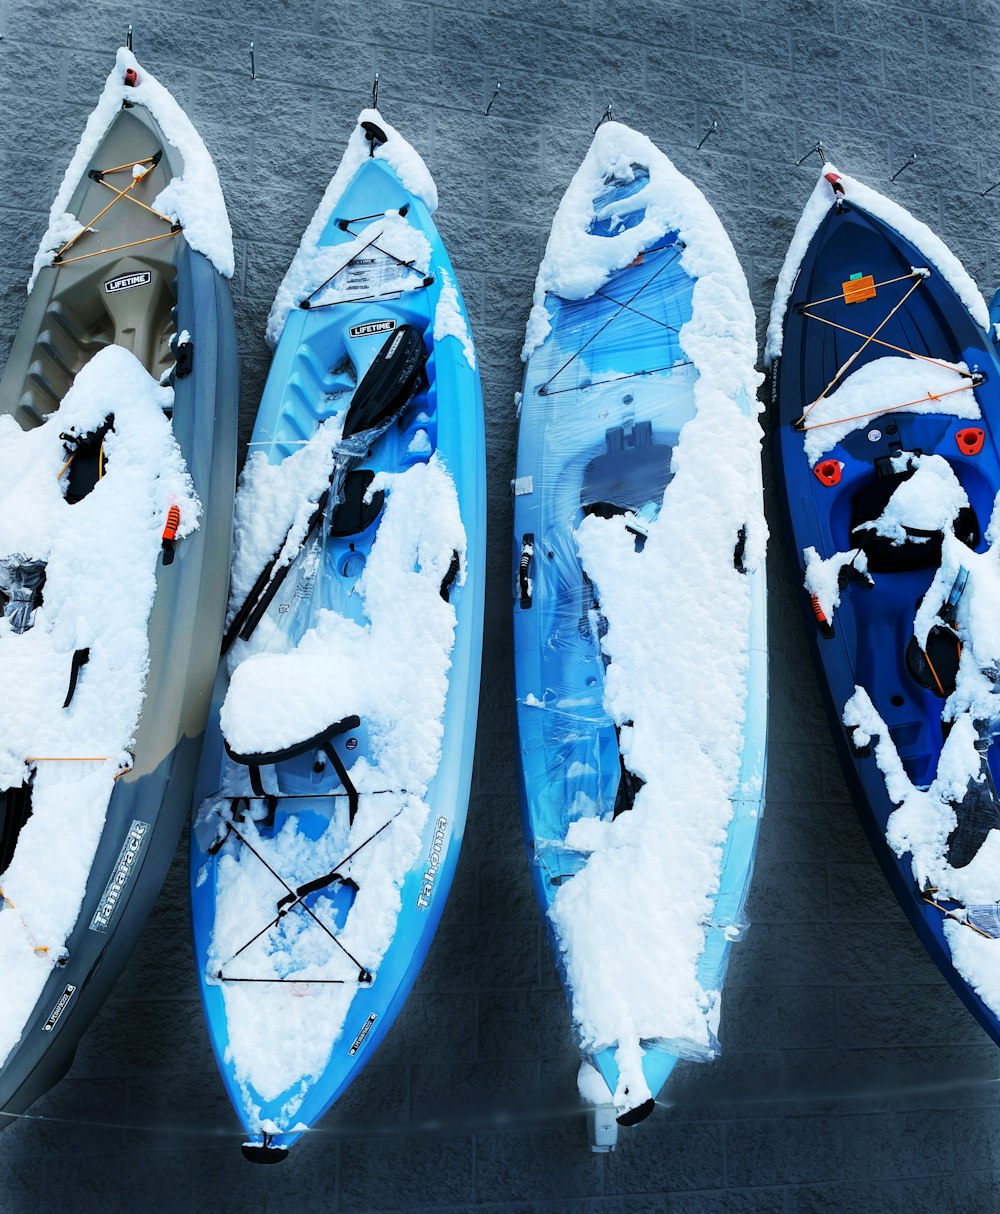 Tres kayaks cubiertos de nieve sentados uno al lado del otro